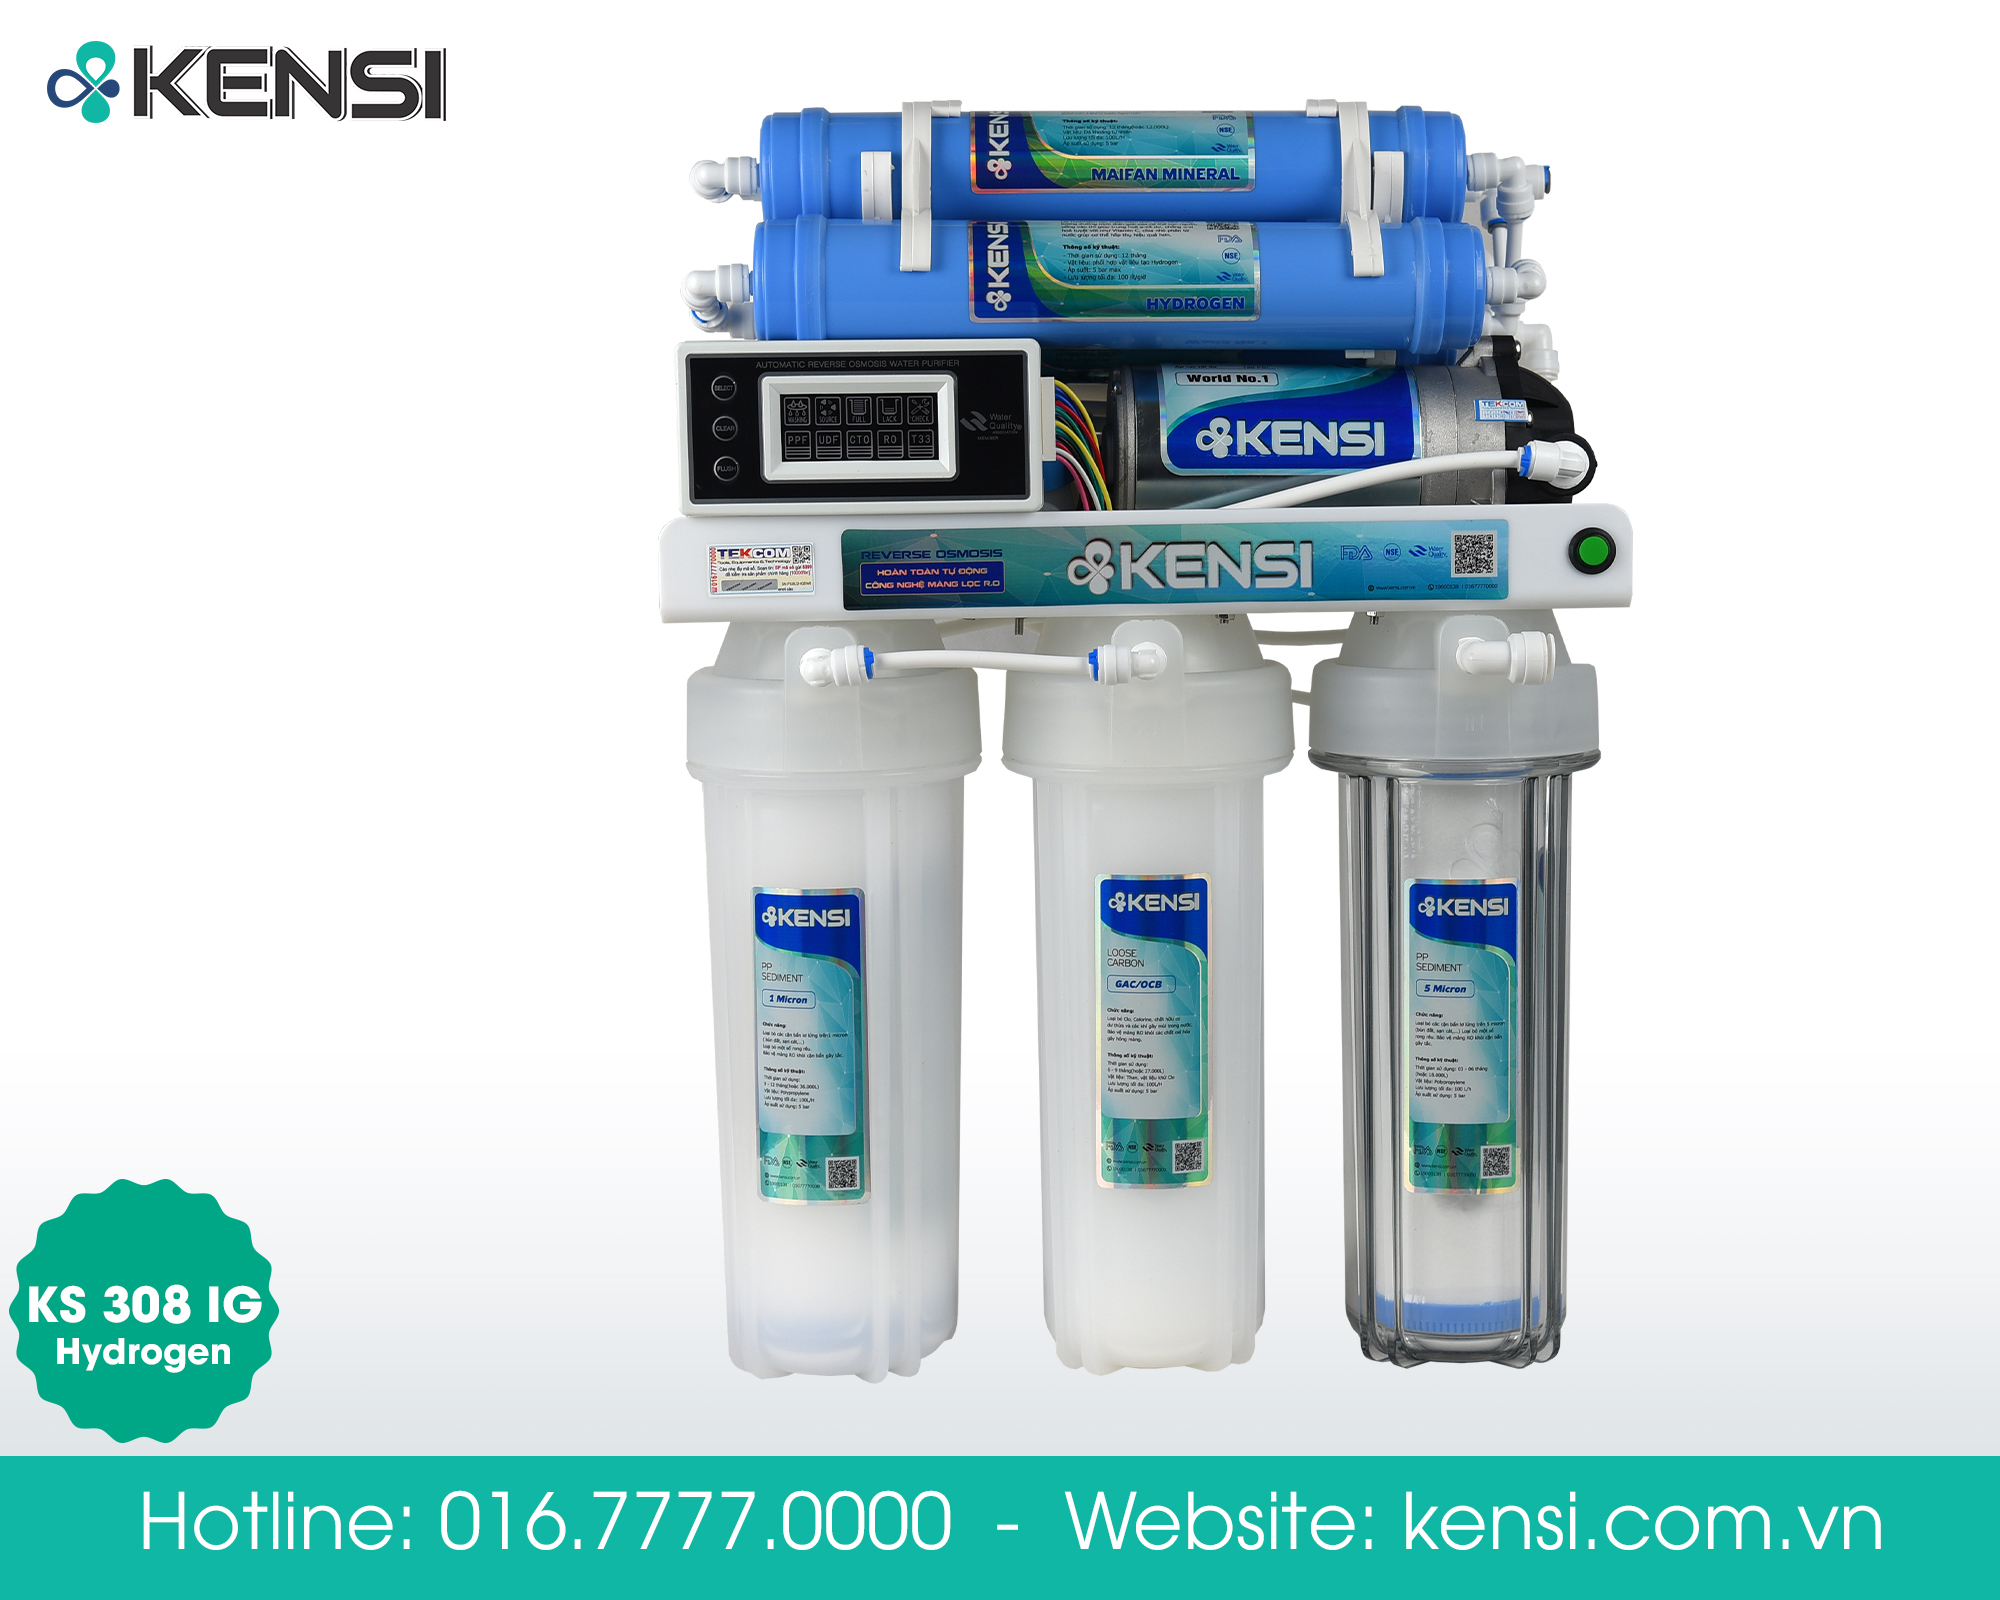 Cốc nhựa nguyên sinh được Công Ty Tekcom lắp đặt trong máy lọc nước KS308IG - Hydrogen